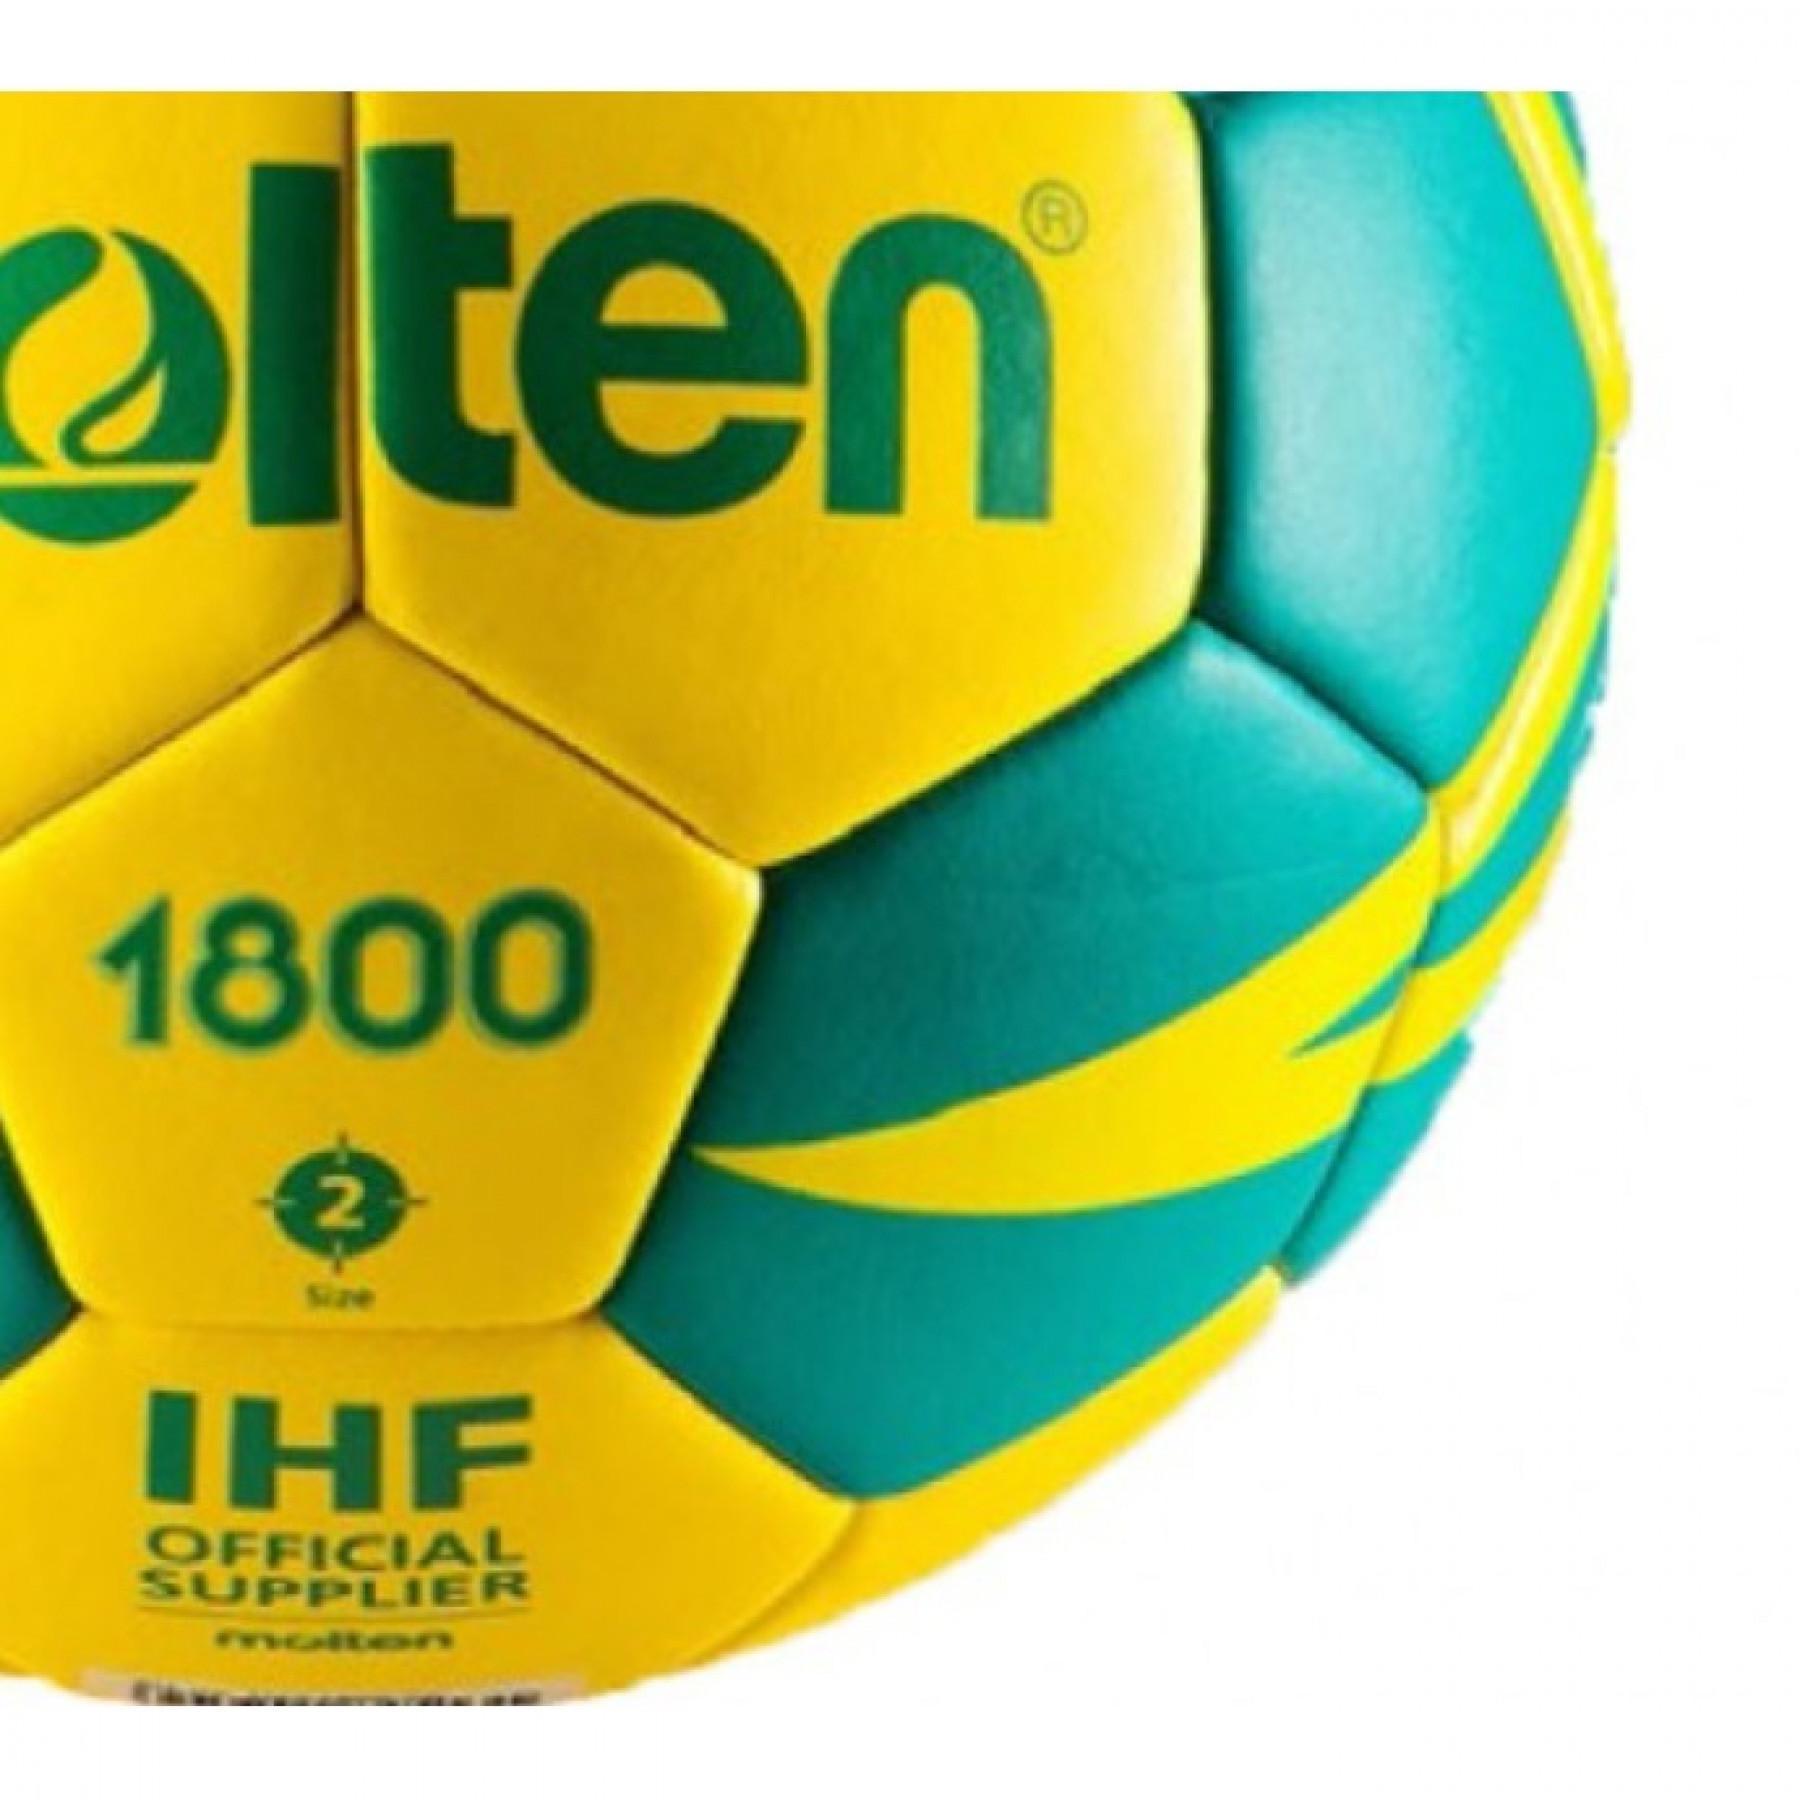 Ballon d'entraînement Molten HX1800 (Taille 1)